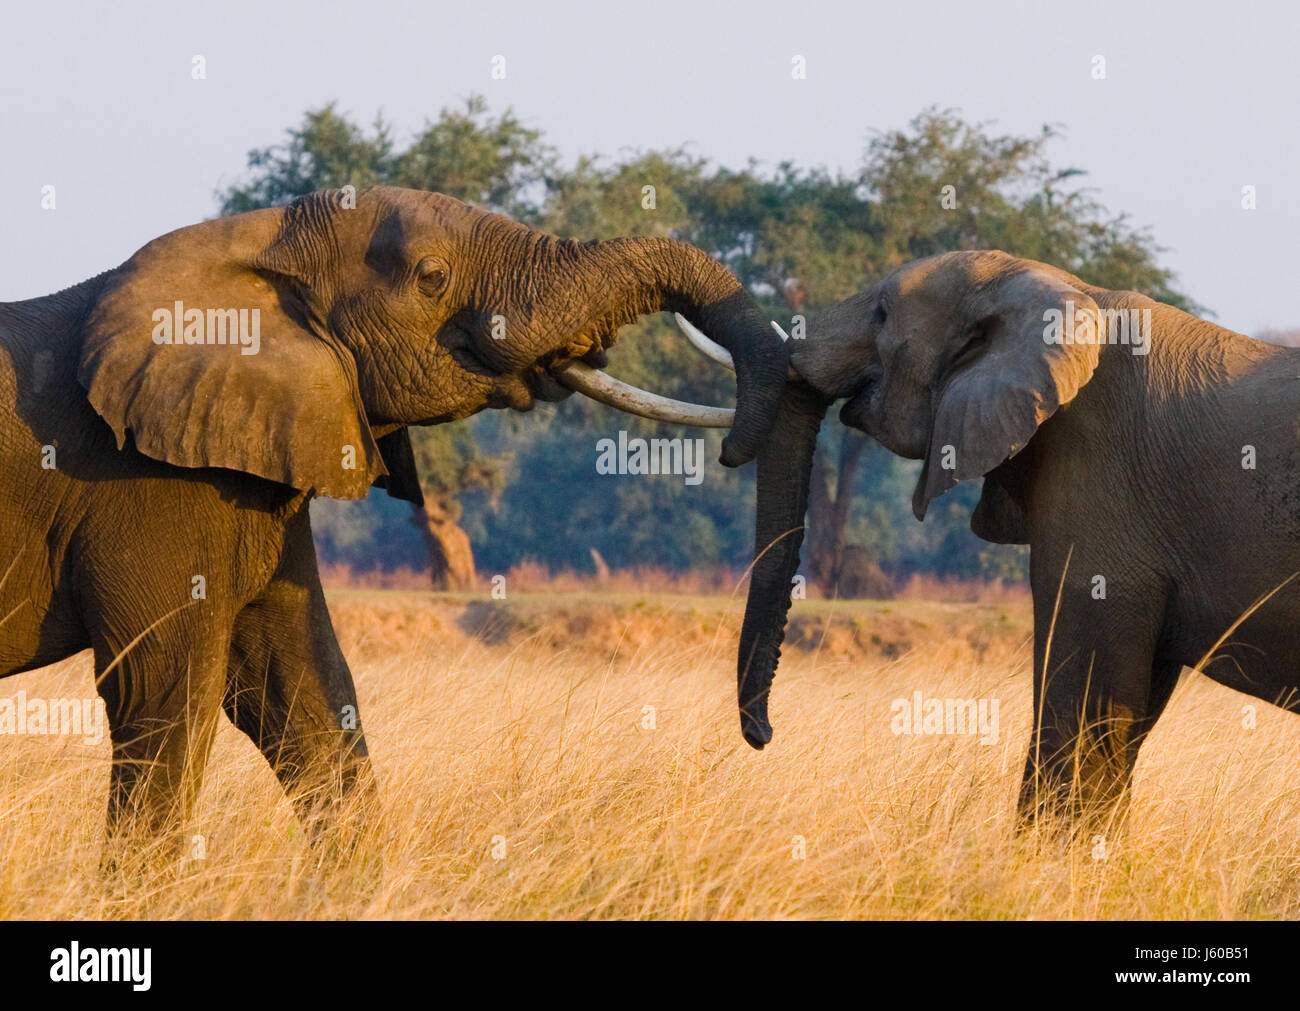 Zwei Elefanten spielen miteinander. Sambia. Unterer Sambesi-Nationalpark. Sambesi Fluss. Stockfoto